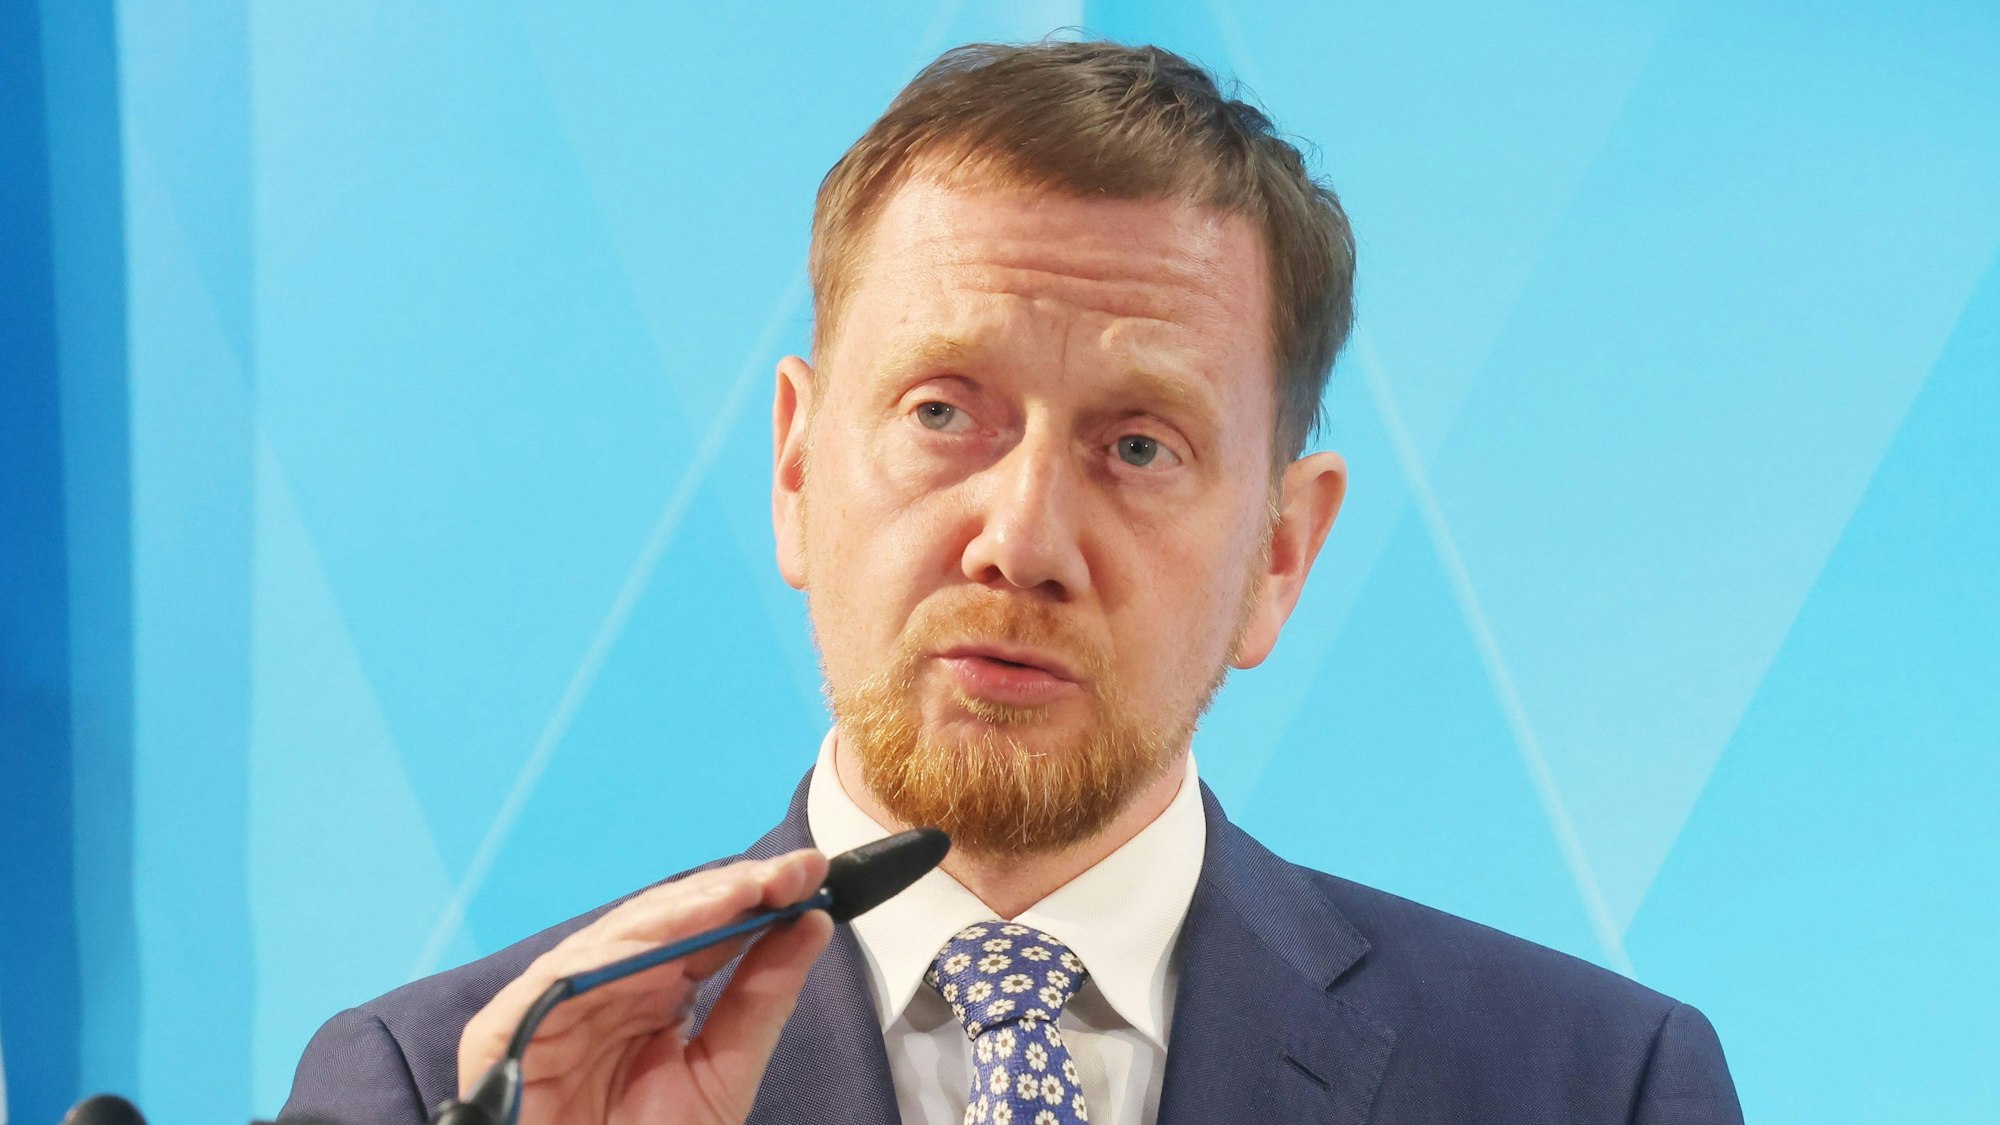 Der sächsische Ministerpräsident Michael Kretschmer (CDU) richtet bei einer Pressekonferenz sein Mikrofon.